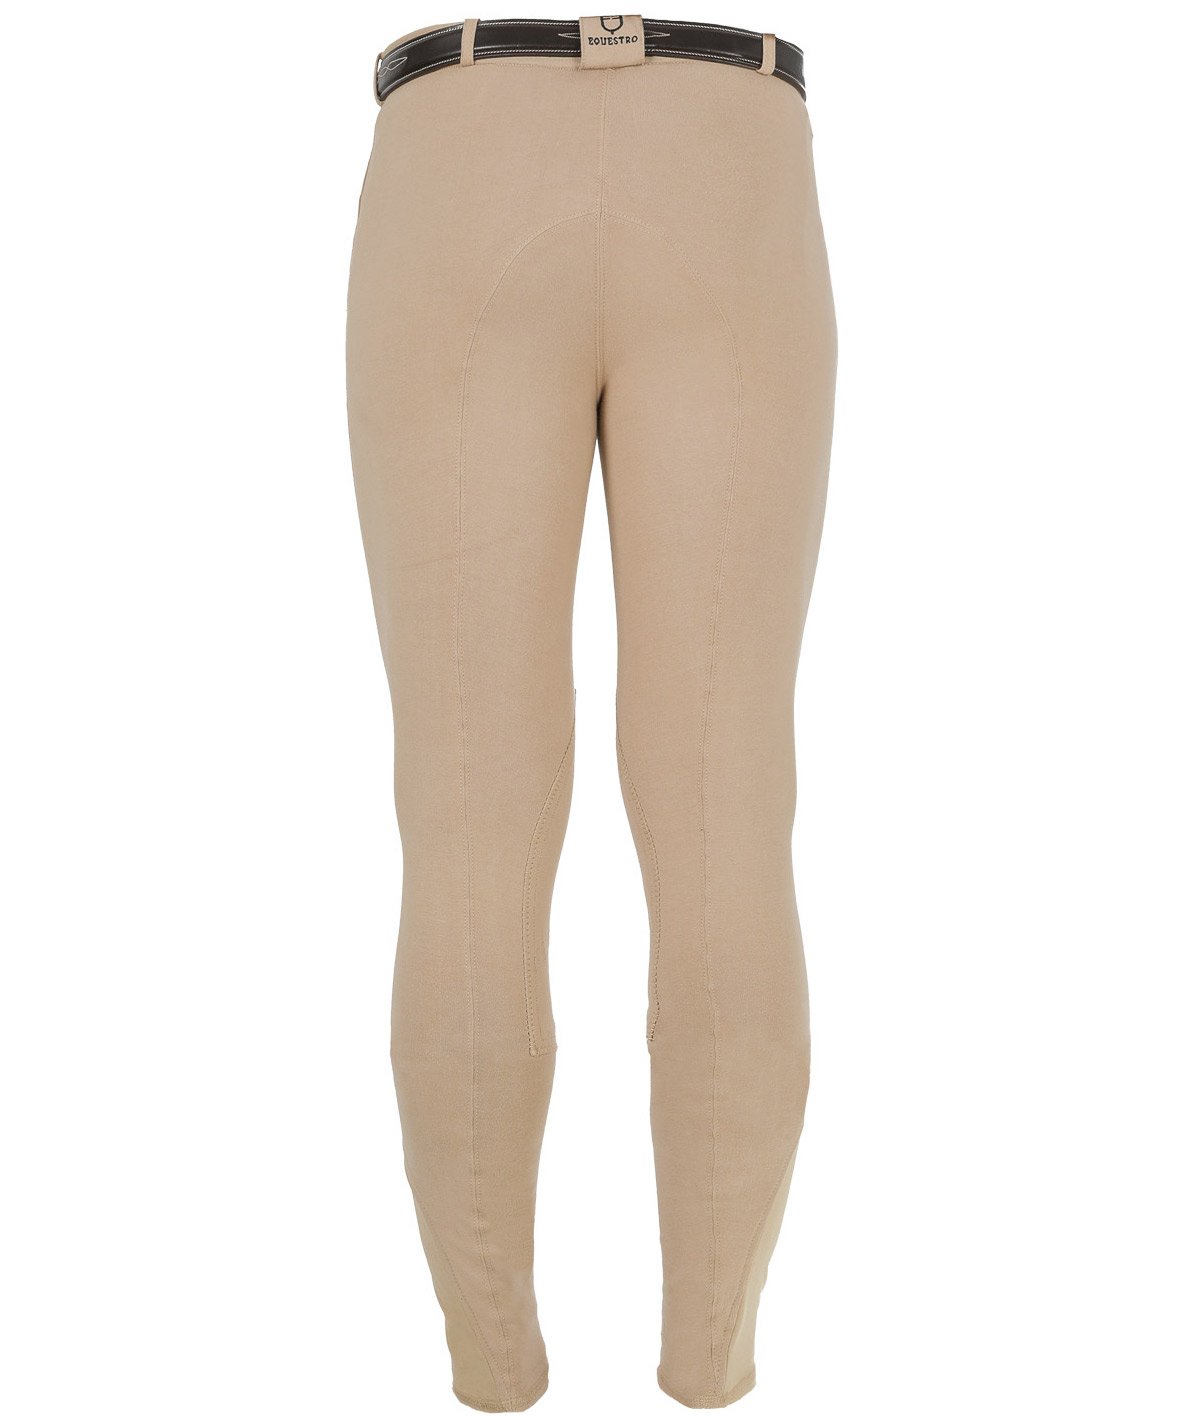 Pantalone da uomo per equitazione URANO a vita bassa in cotone leggero elasticizzato - foto 1